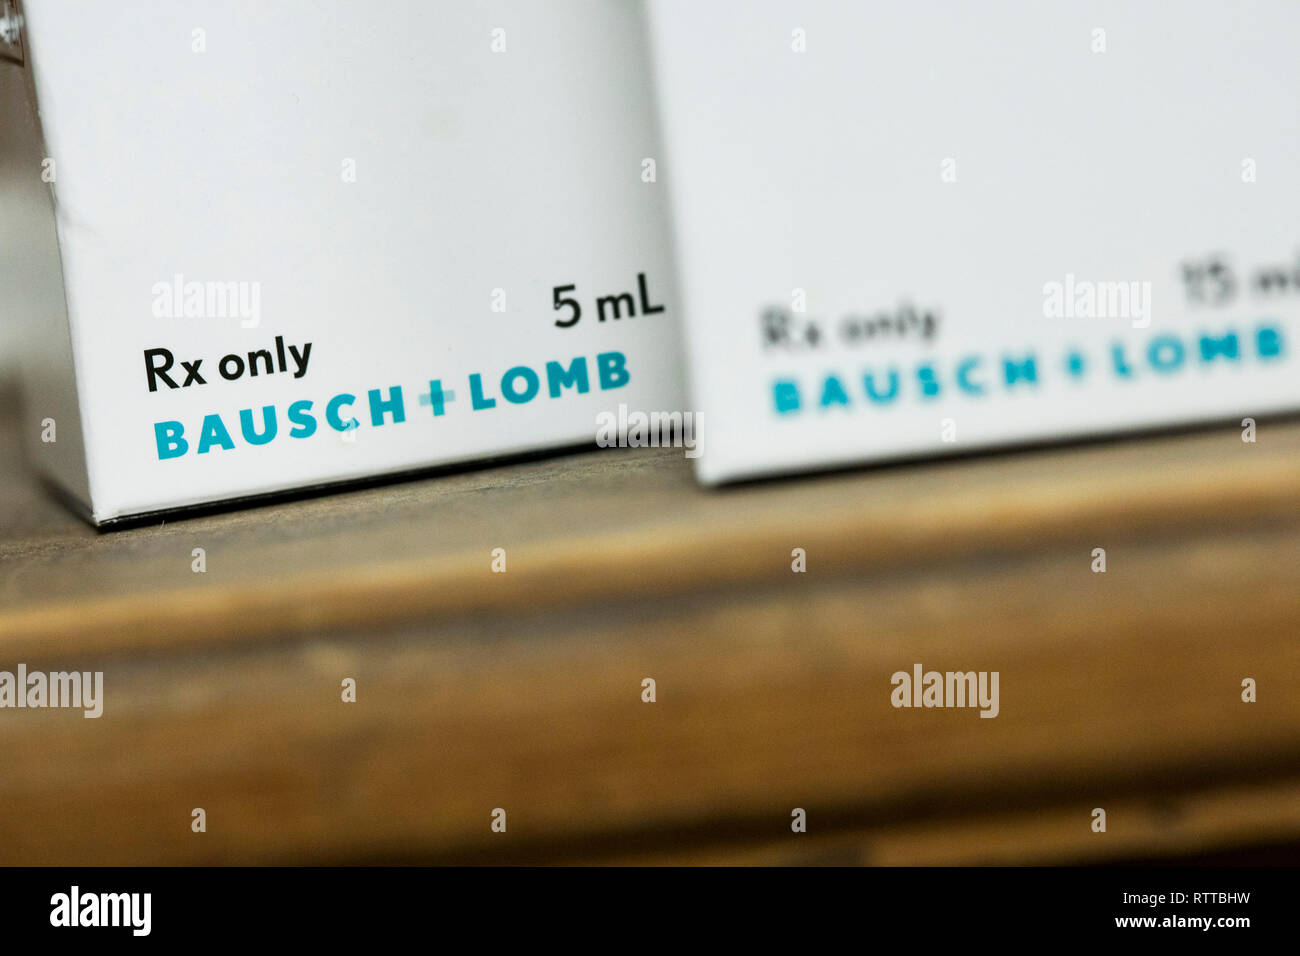 Un logo de Bausch & Lomb est vu sur l'emballage de produits pharmaceutiques sur ordonnance photographié dans une pharmacie. Banque D'Images